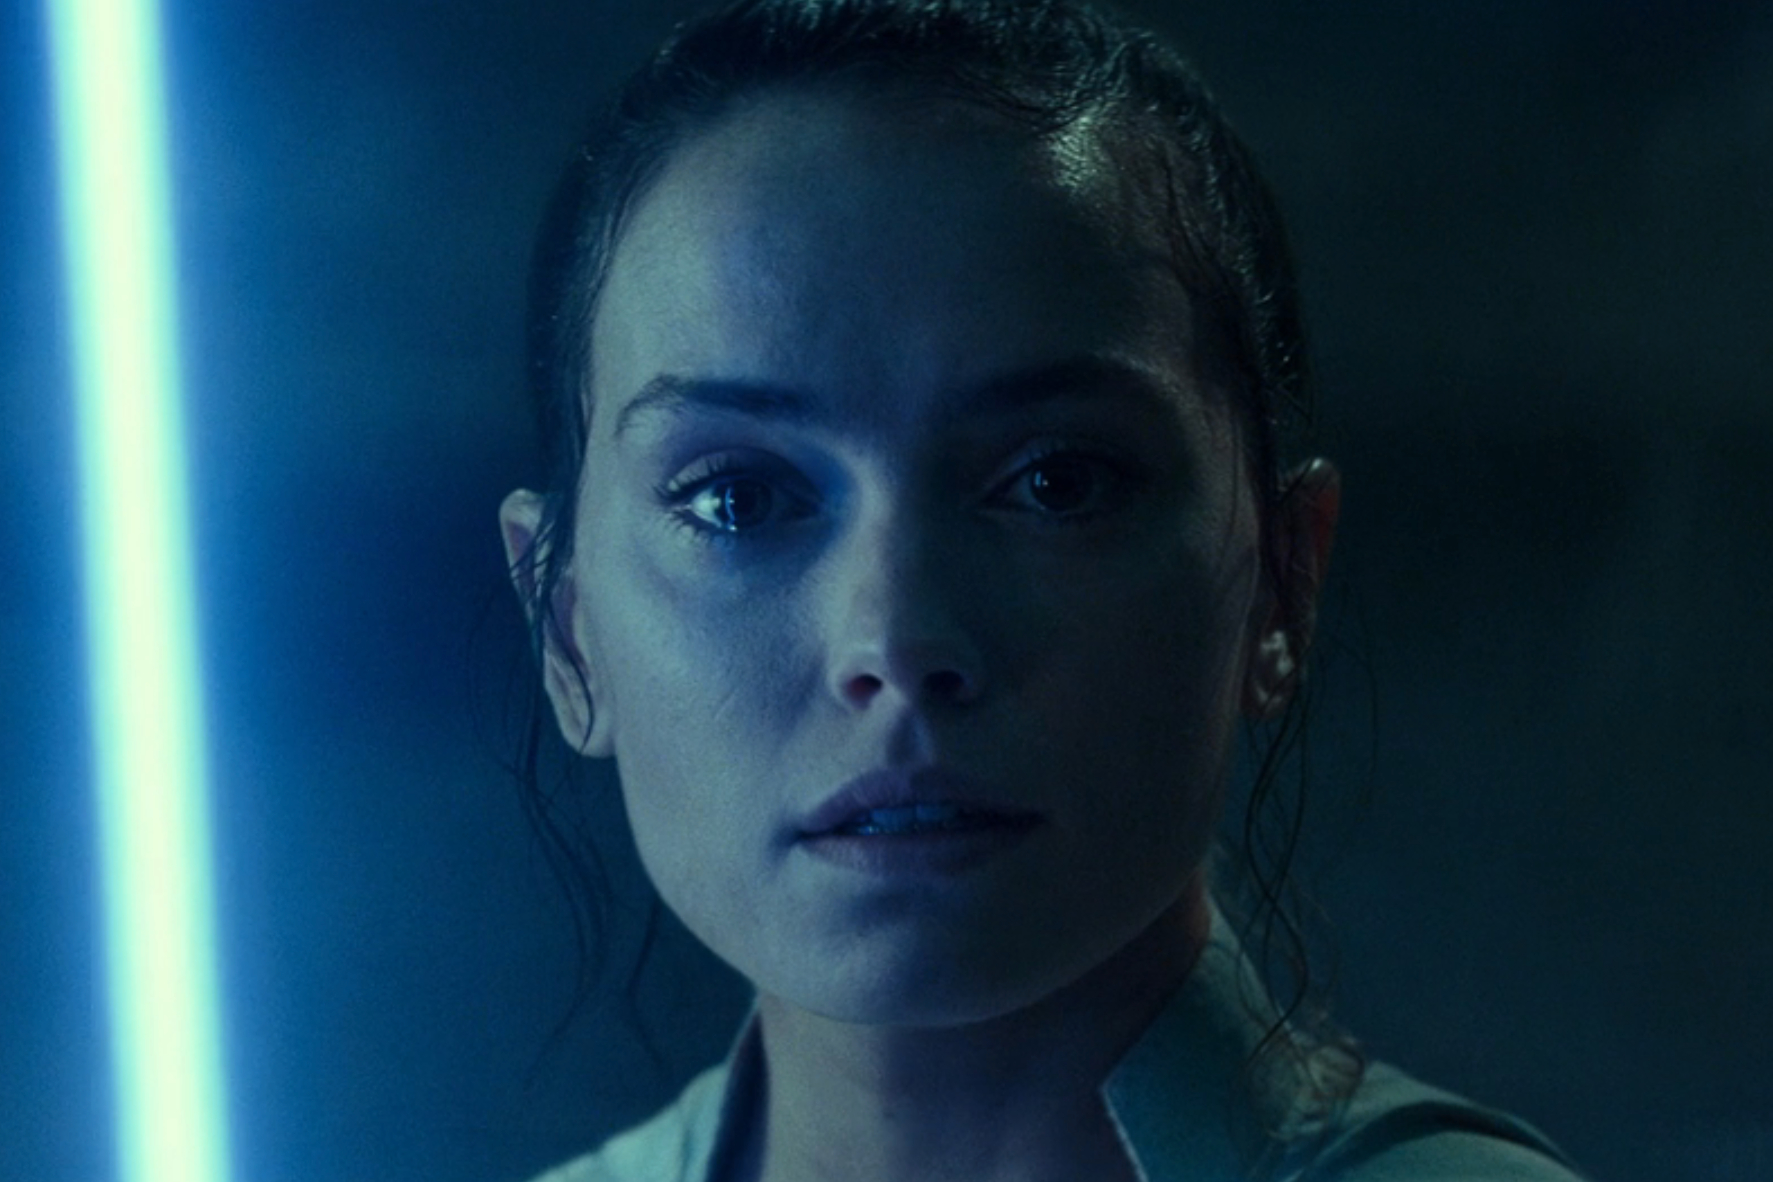 Un sable de luz azul ilumina la cara de Rey en Star Wars: Episodio IX - El ascenso de Skywalker.